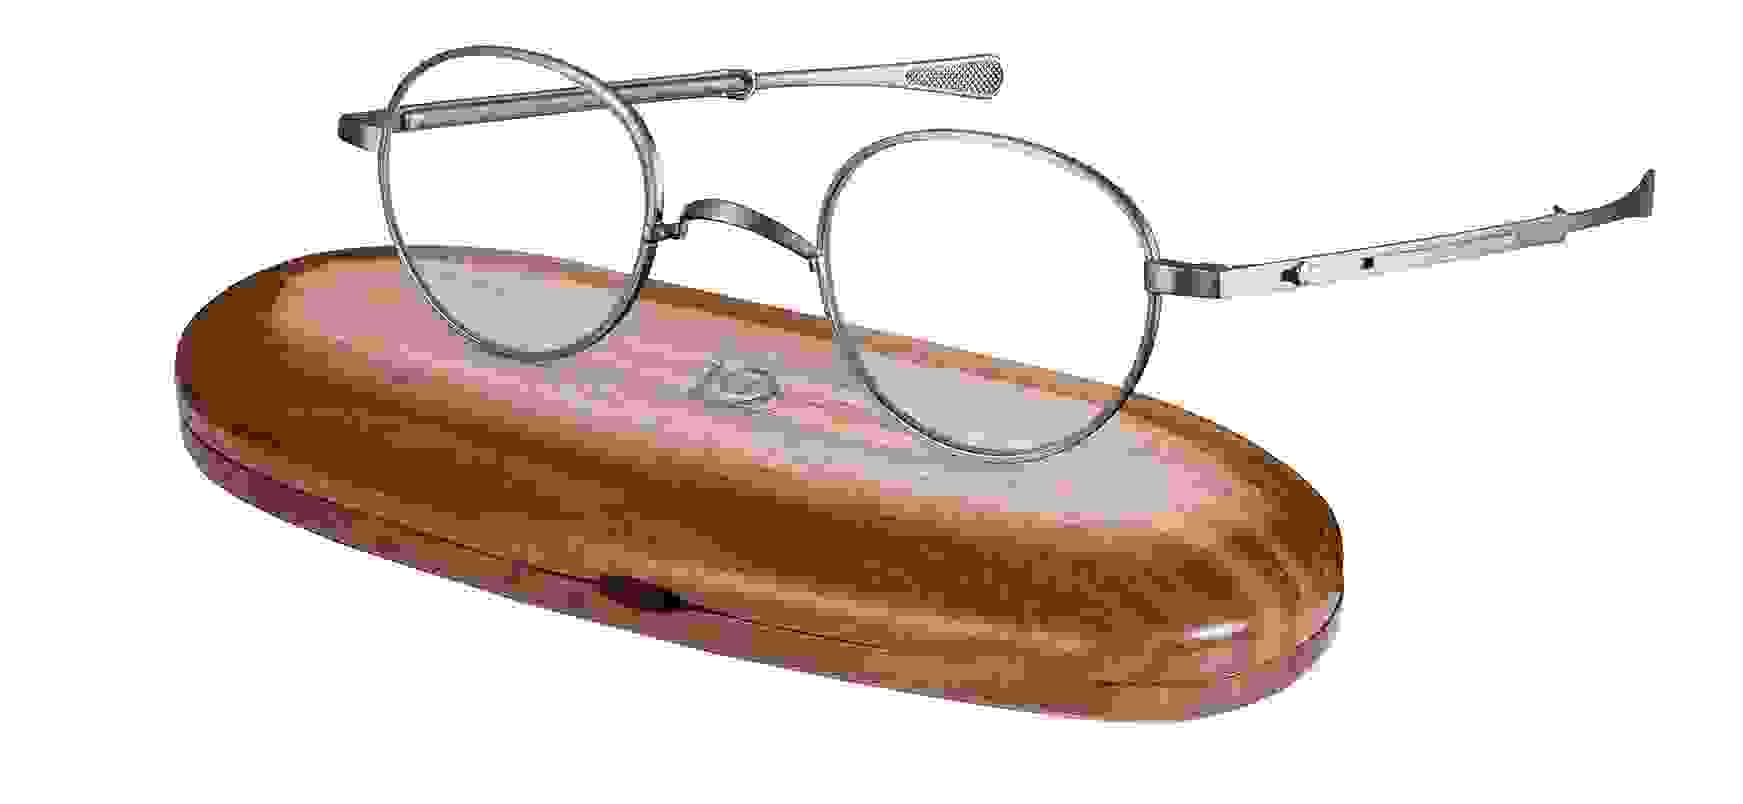 Nahaufnahme von einer Gernot Lindner runden Korrekturbrille mit silbernem Gestell, die auf einem Brillenetui aus Holz liegt.